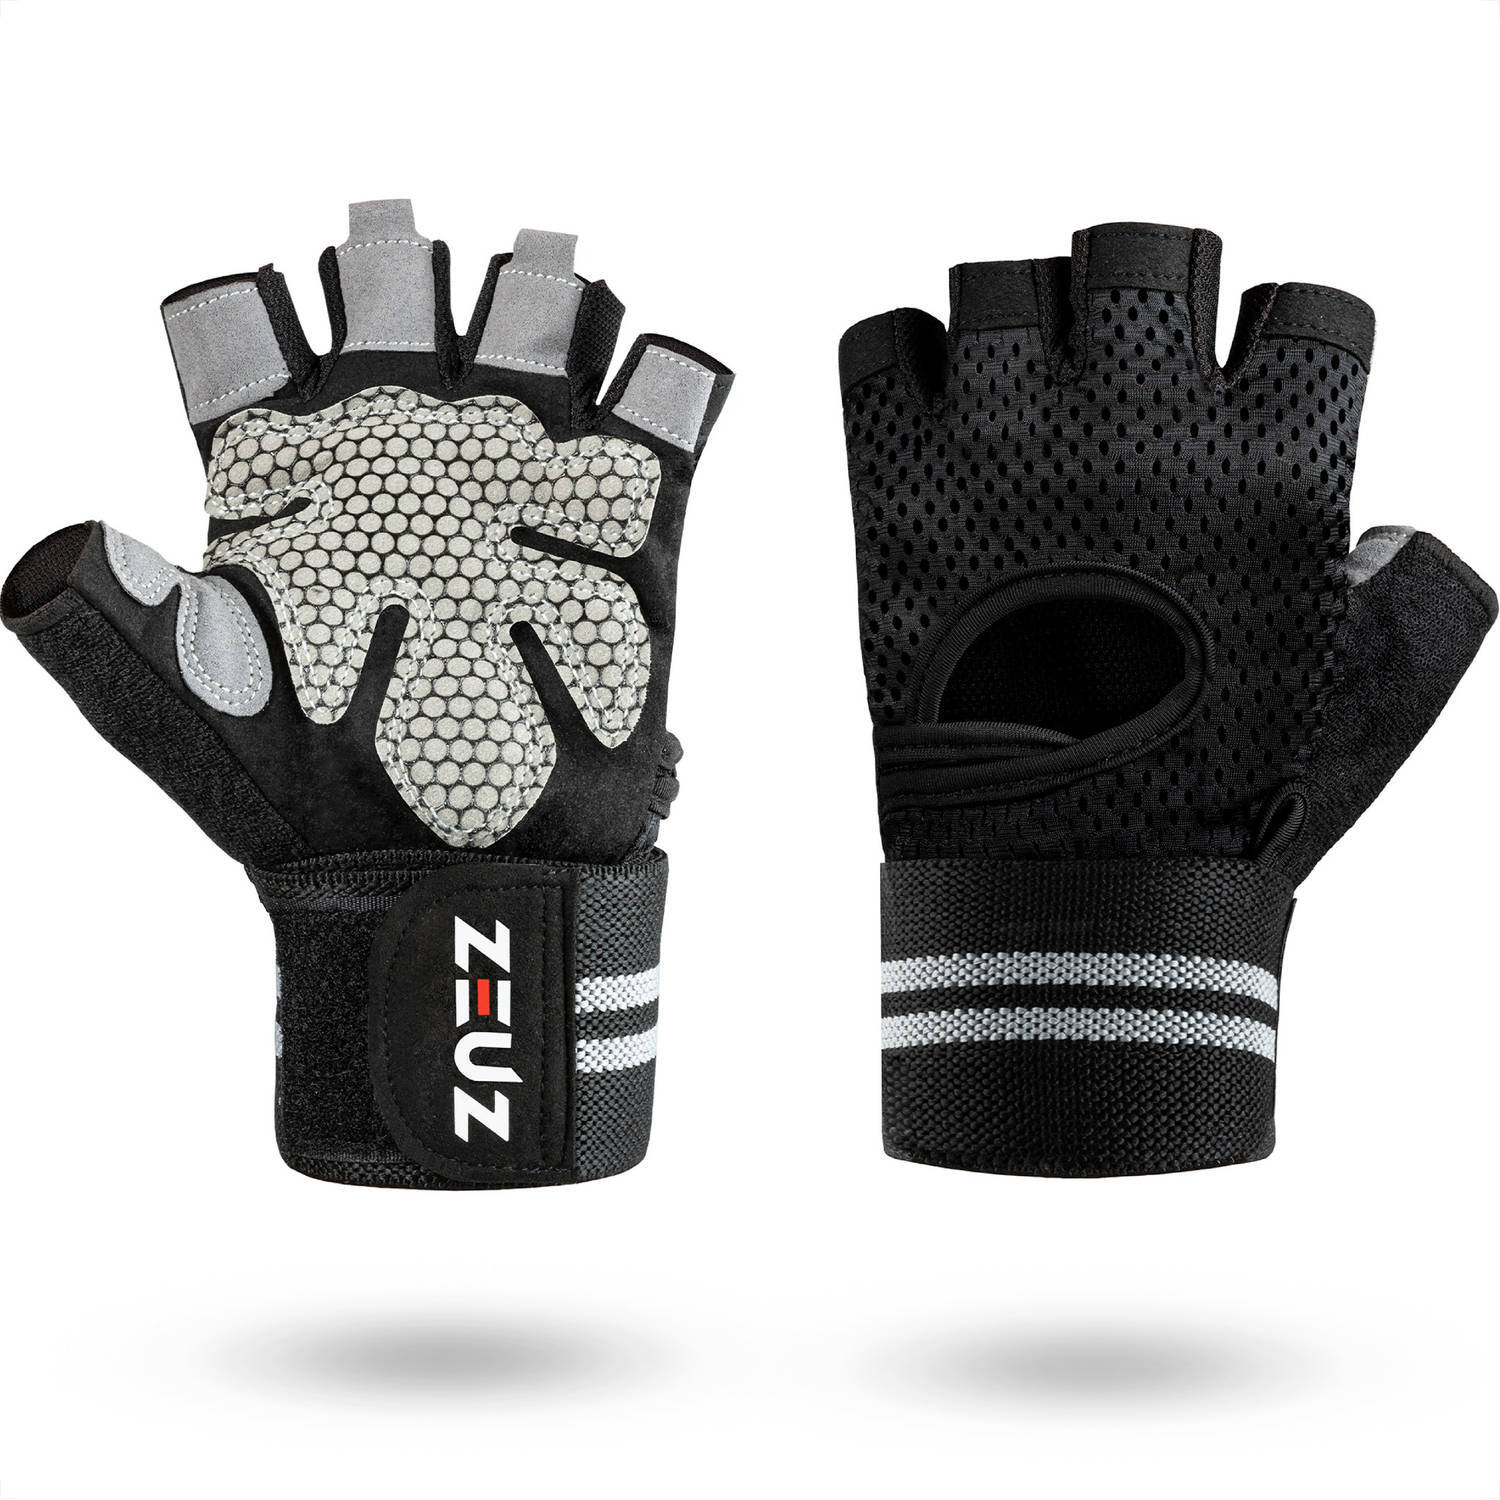 ZEUZ zeuz® sport & fitness handschoenen heren & dames - krachttraining - crossfit - grijs & zwart - maat m